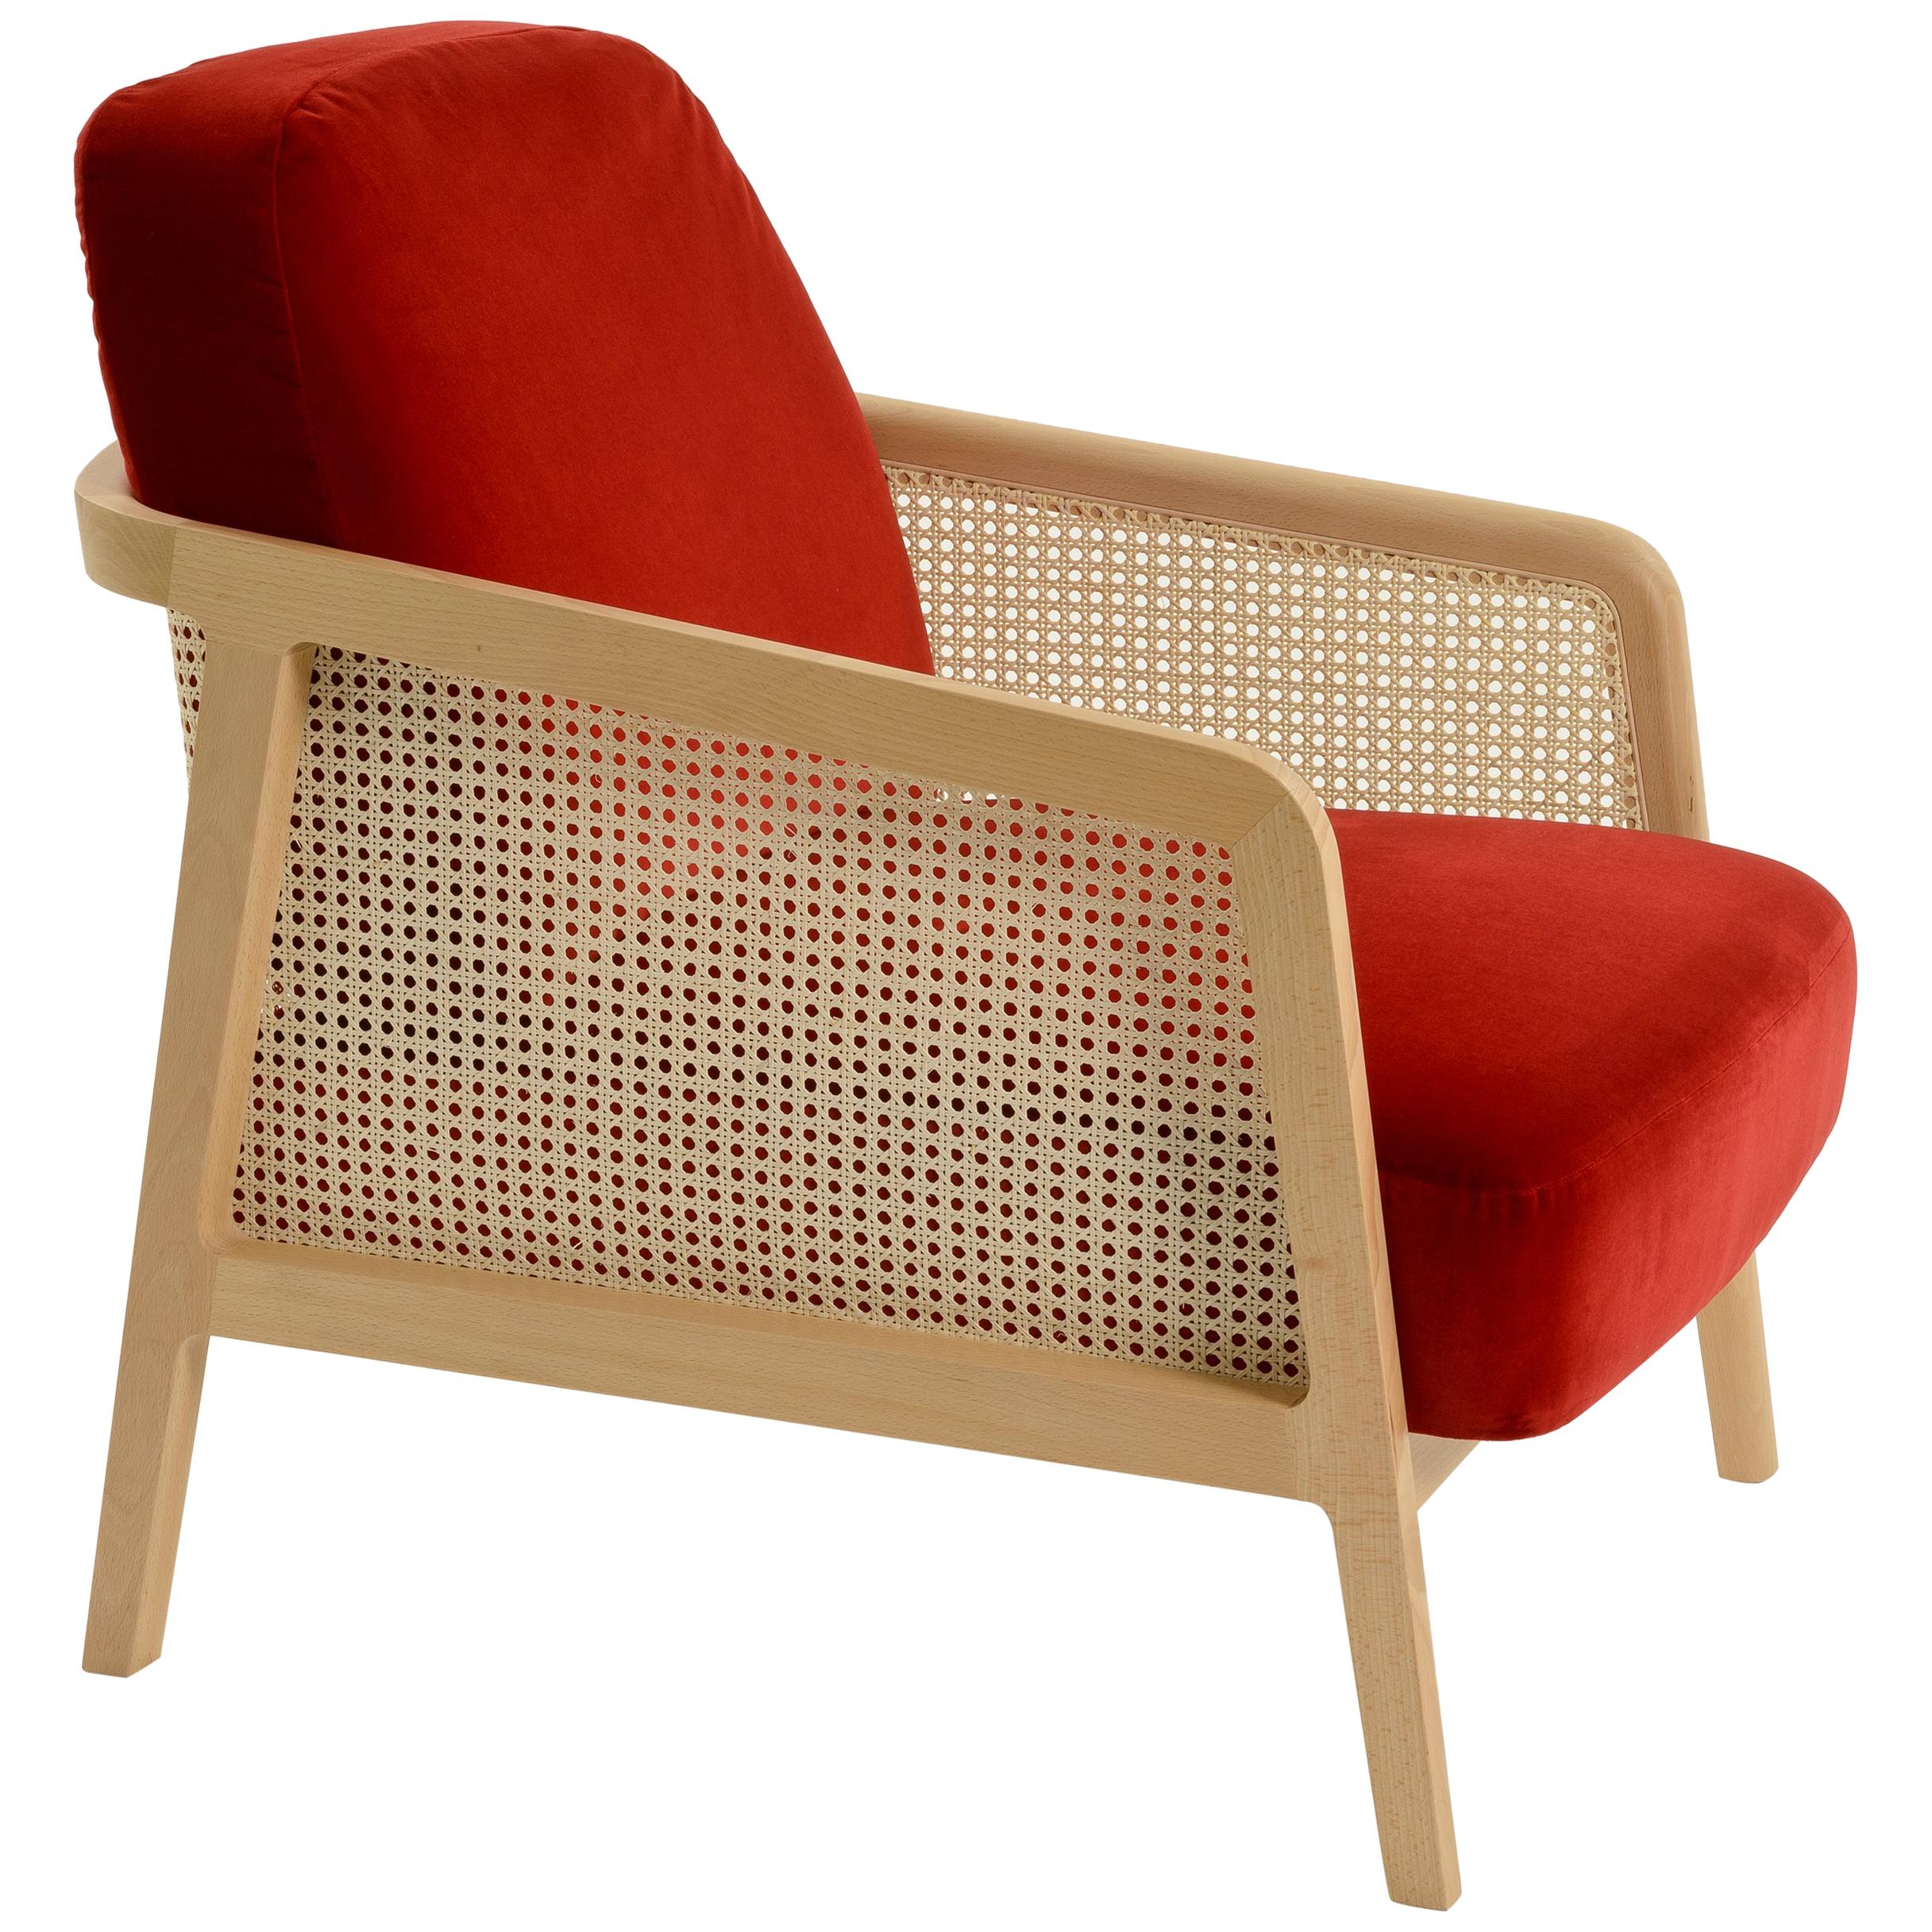 Wiener Loungesessel von Col, Buchenholz, rote Kissen, zeitgenössisches Design